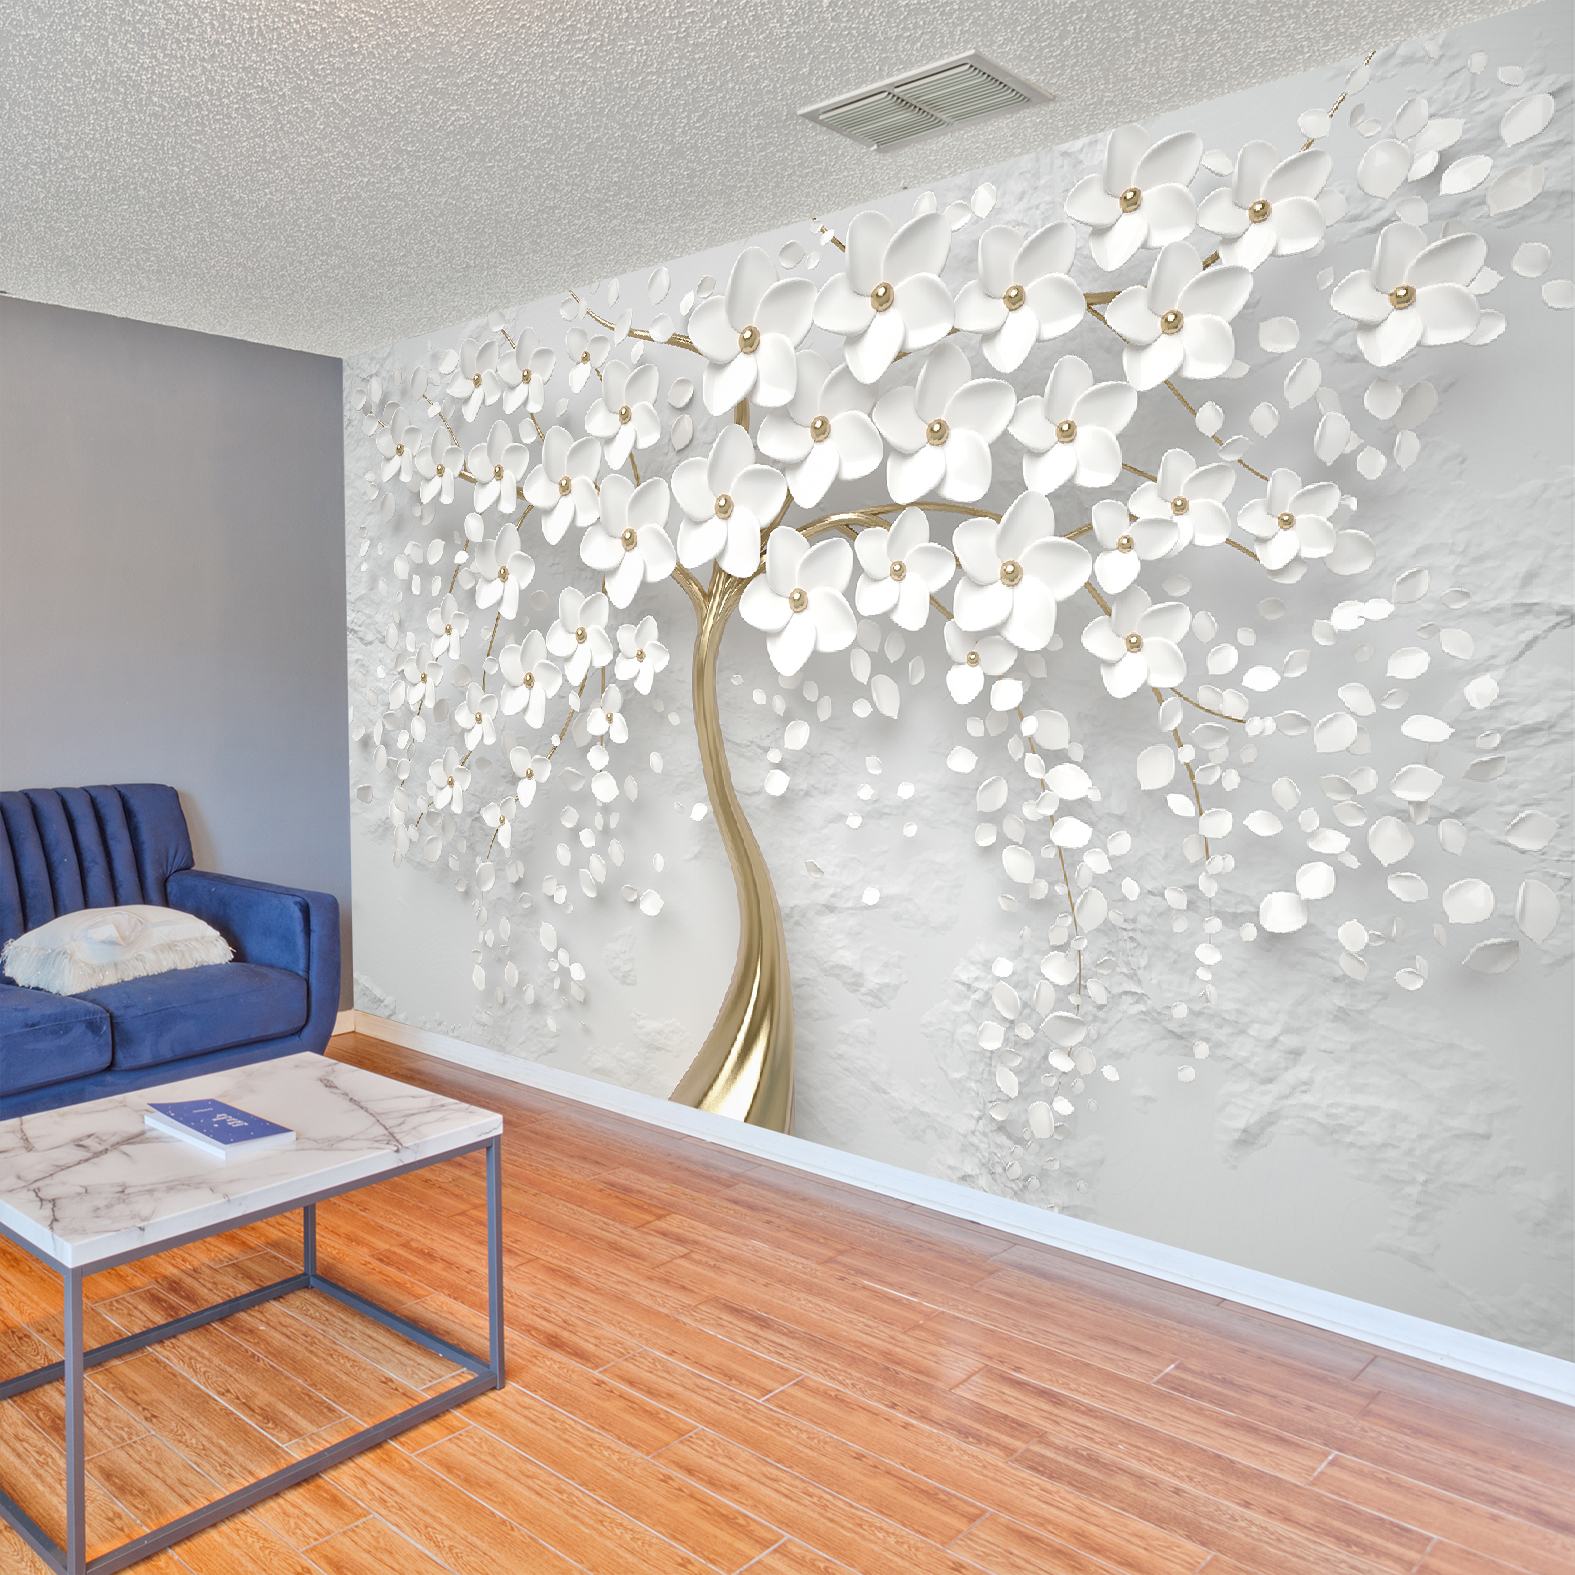 Фотообои Photostena 3D дерево в белых цветах 4 x 2,5 м